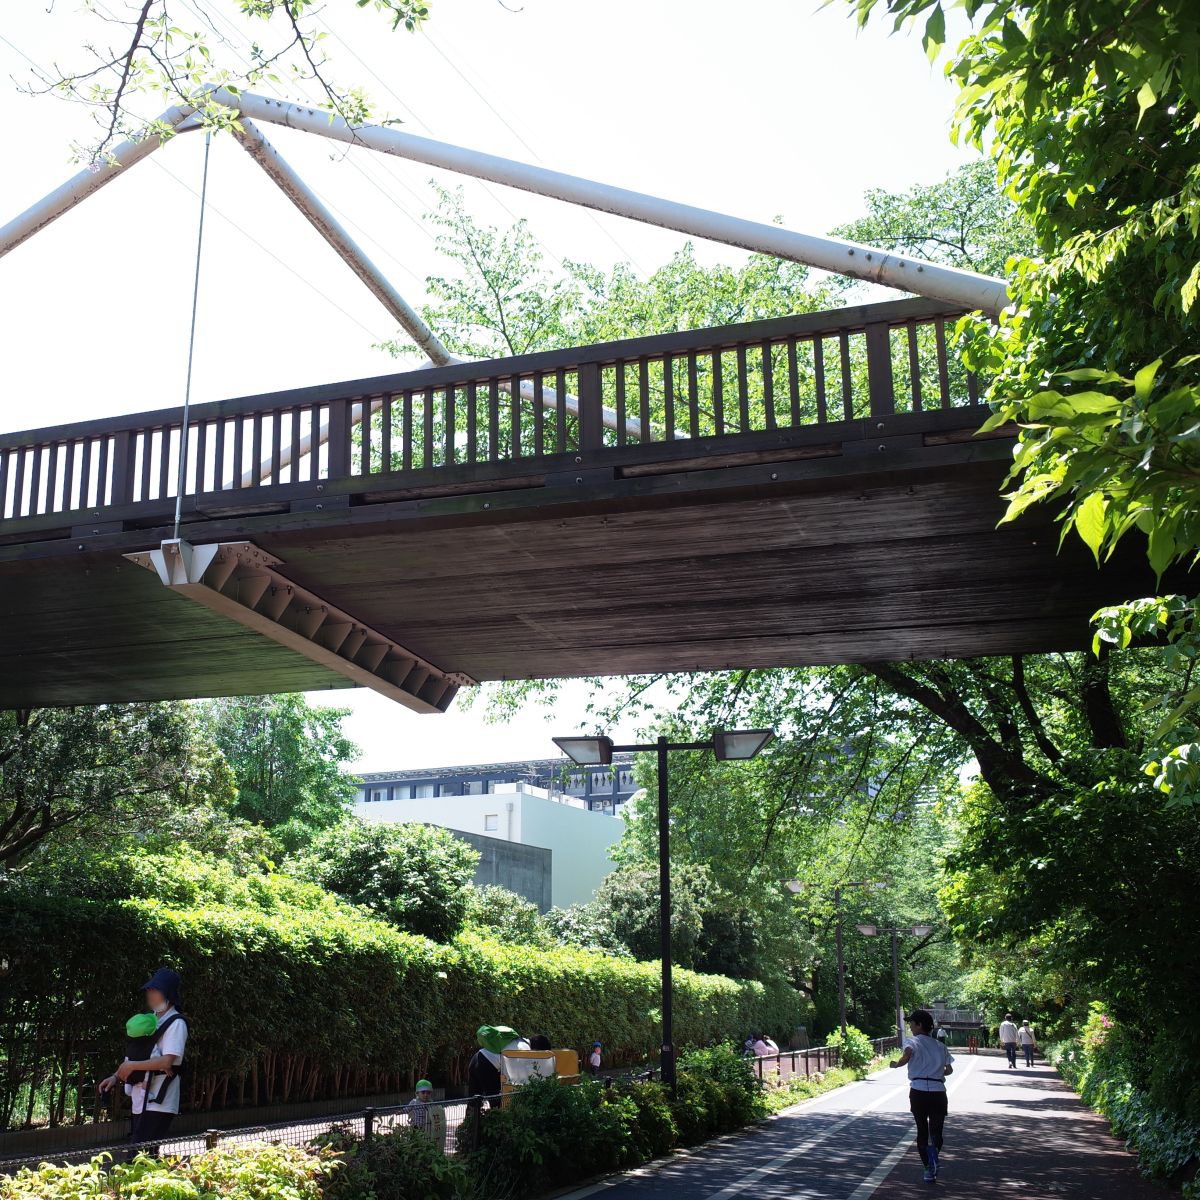 呑川緑道にかかる「新しい橋」についてのアイキャッチ画像